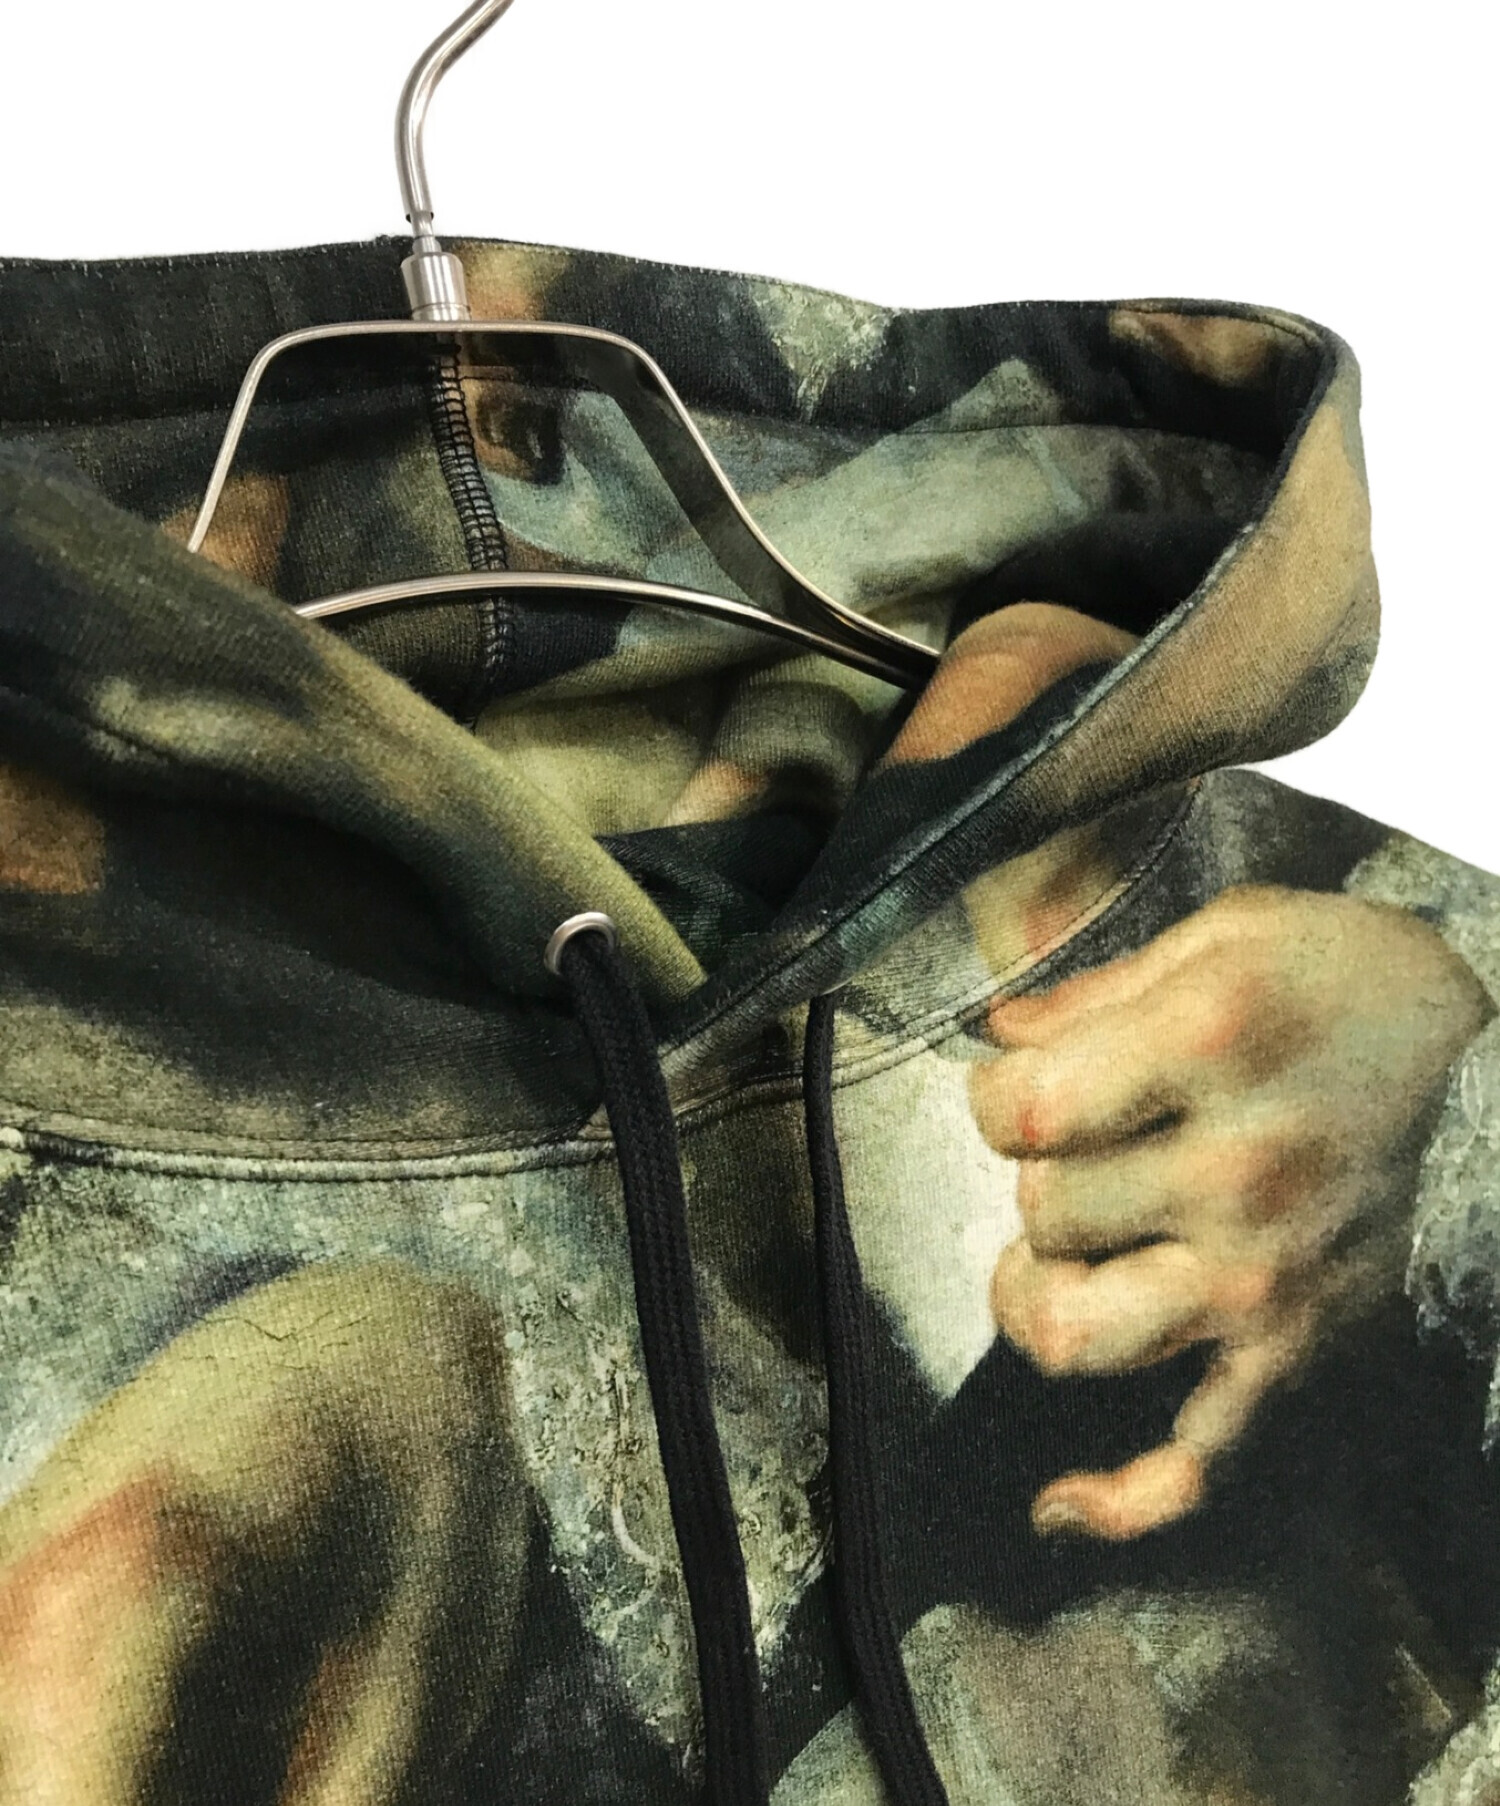 SUPREME (シュプリーム) UNDERCOVER (アンダーカバー) 15SS Hooded Sweatshirt ブラック×ベージュ サイズ:L